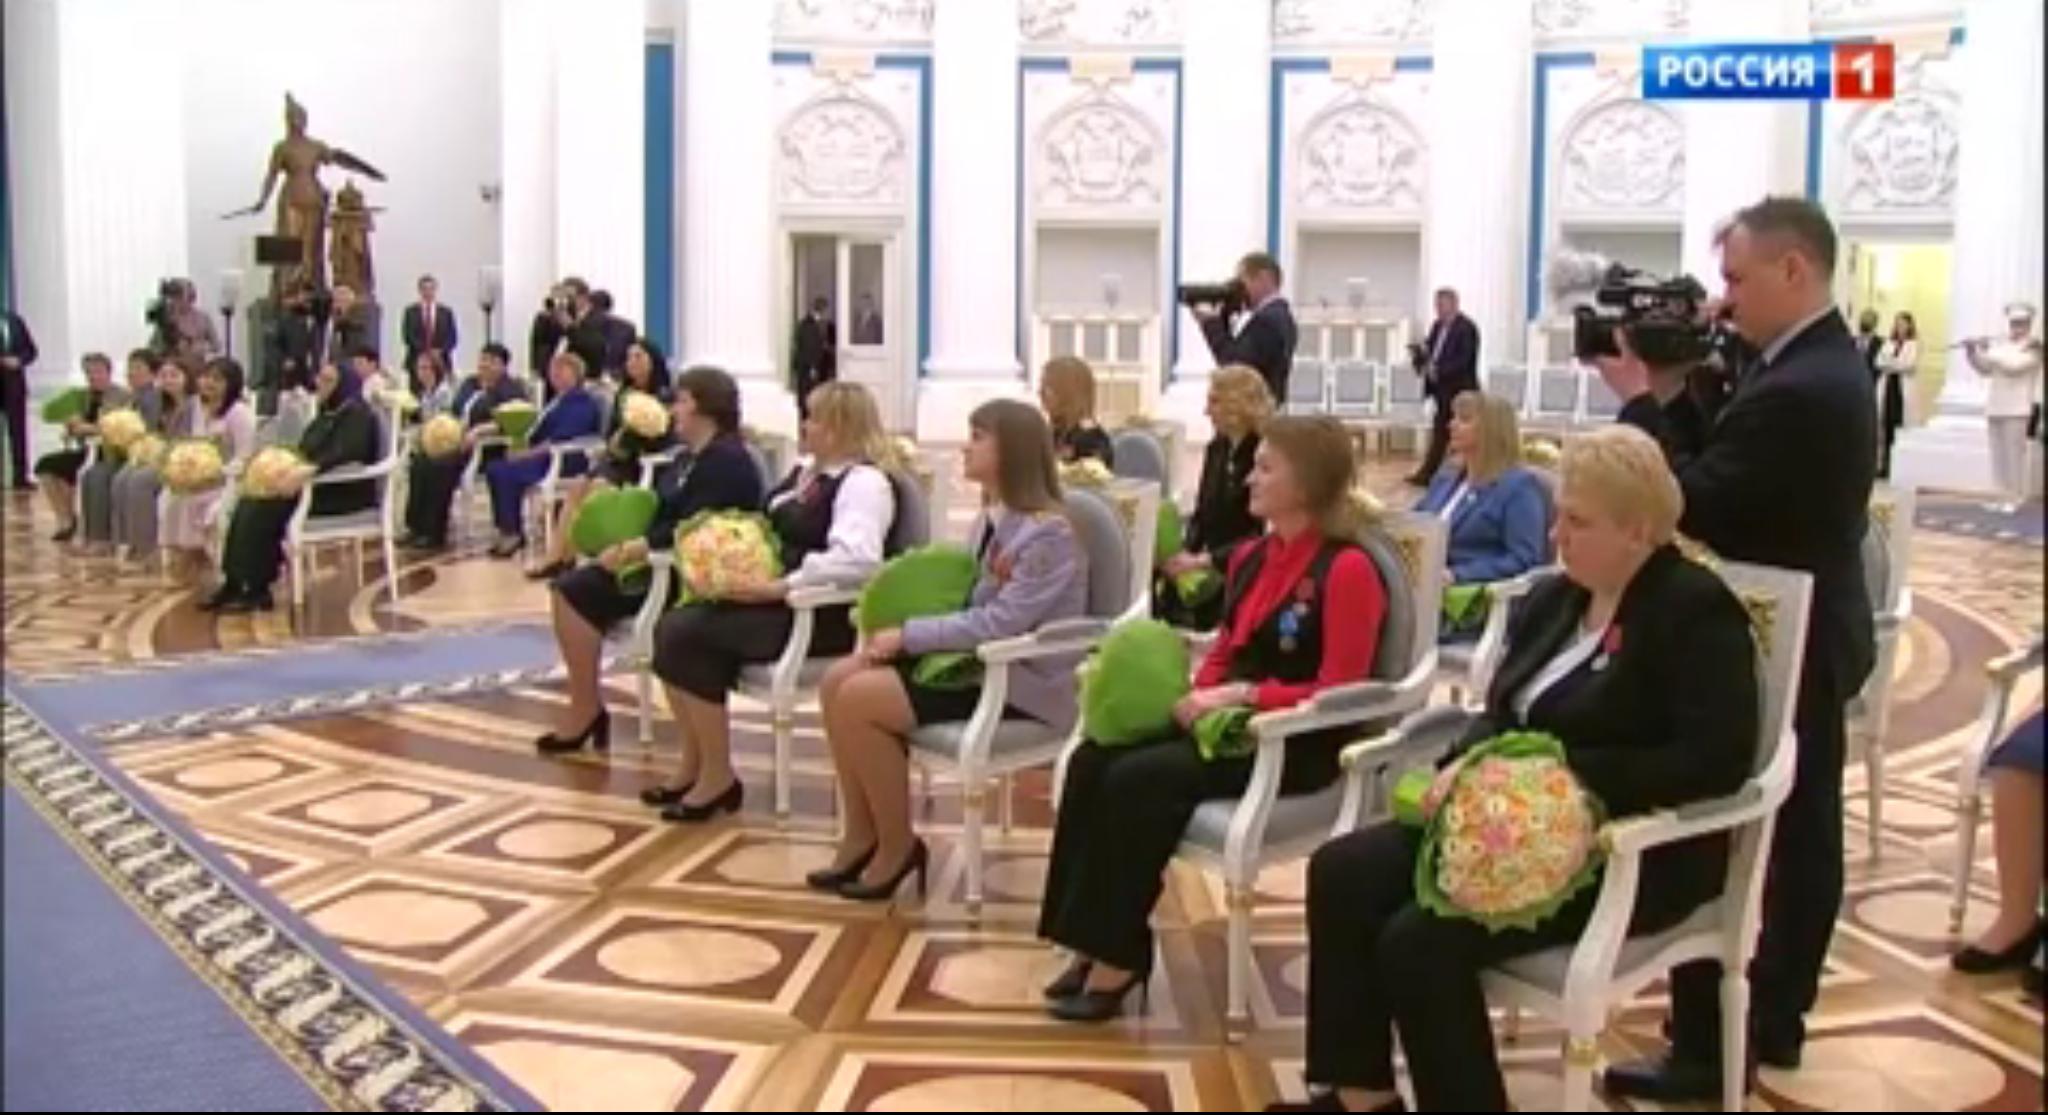 Kobiety z bukietami żółtych kwatów siedzą w ozdobnych fotelach rozstawionych w rzędach w sali pałacowej